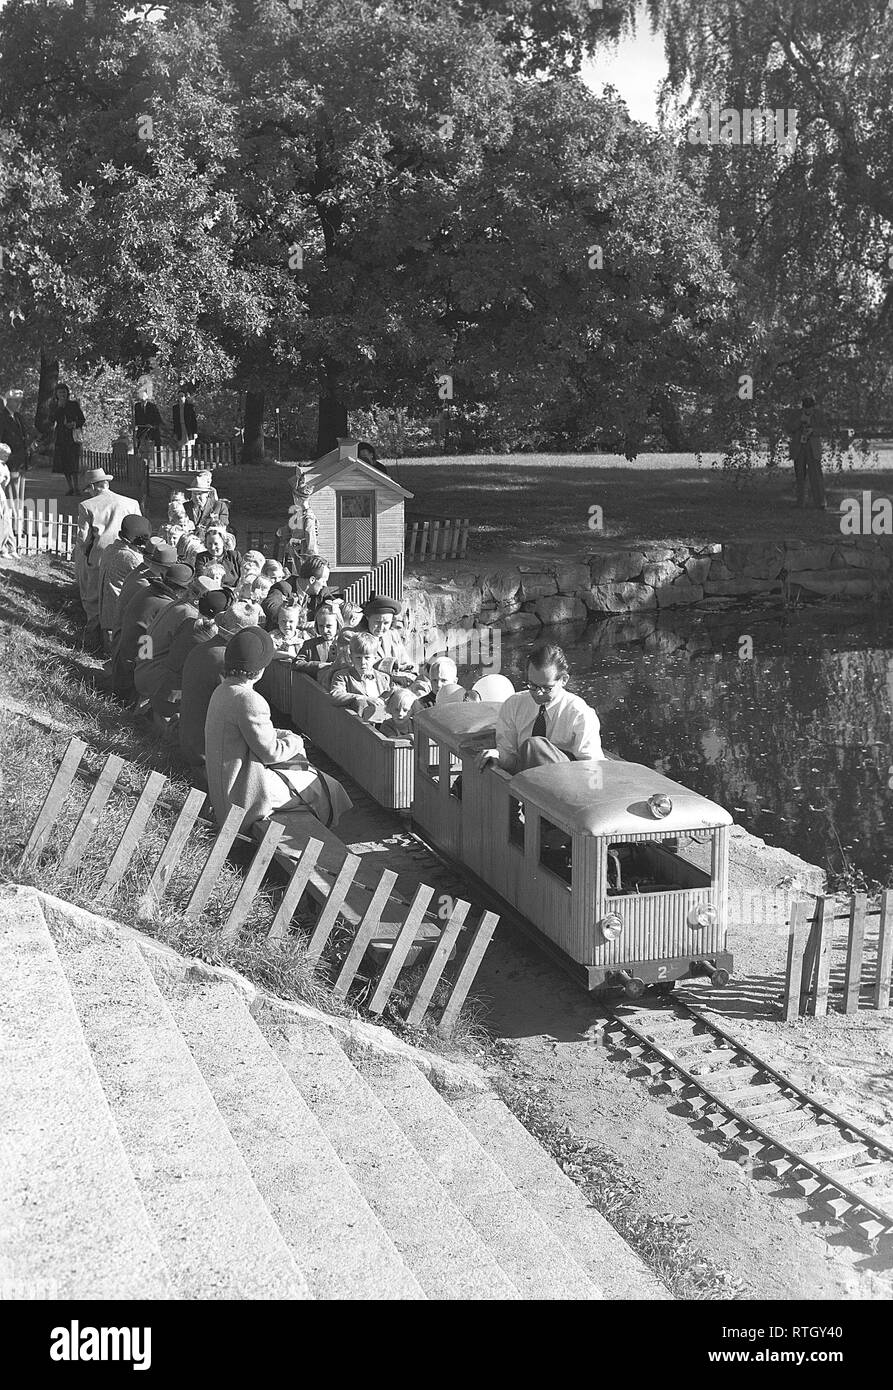 Sommer in den 1940er Jahren. Eine kleine Modellbahn in einem Park in Stockholm, wo Kinder meist genießt eine Fahrt. Foto Kristoffersson. Ref AO 19-8. Schweden 1949 Stockfoto